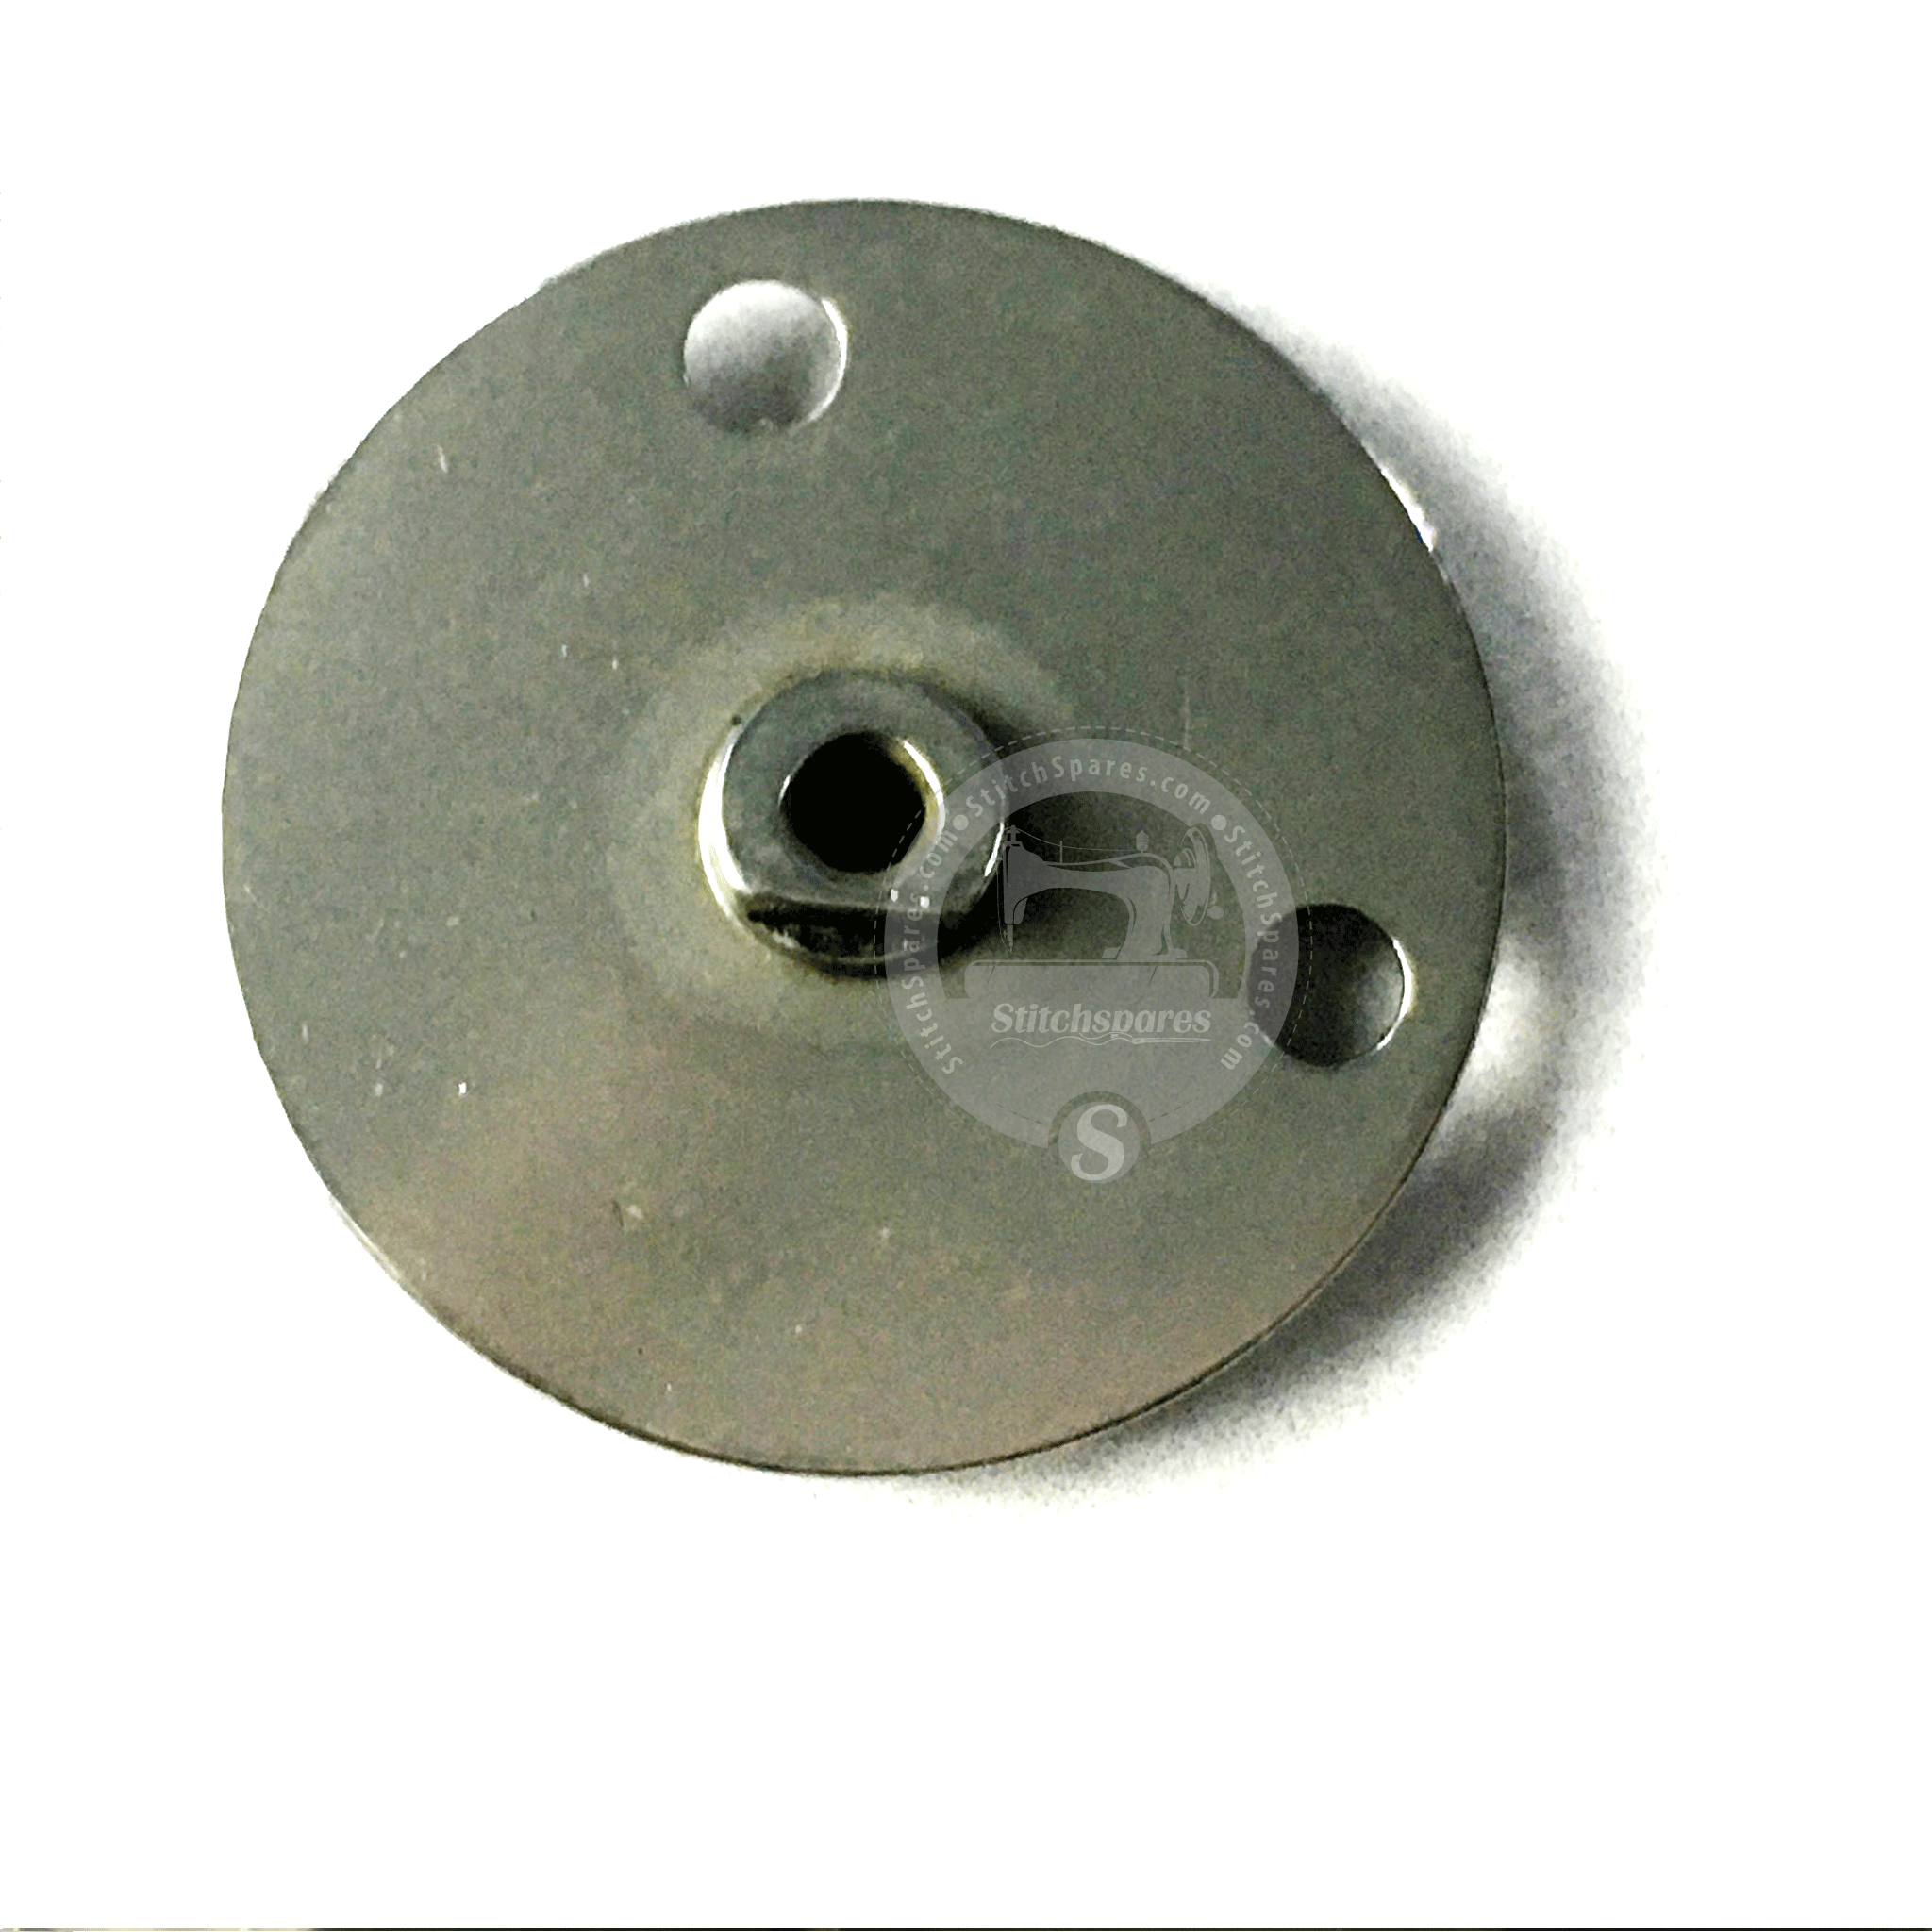 MVZ15601000 # 2.4 MM guía de orificio de placa de aguja Juki Lk-1900 pieza de repuesto para máquina de coser